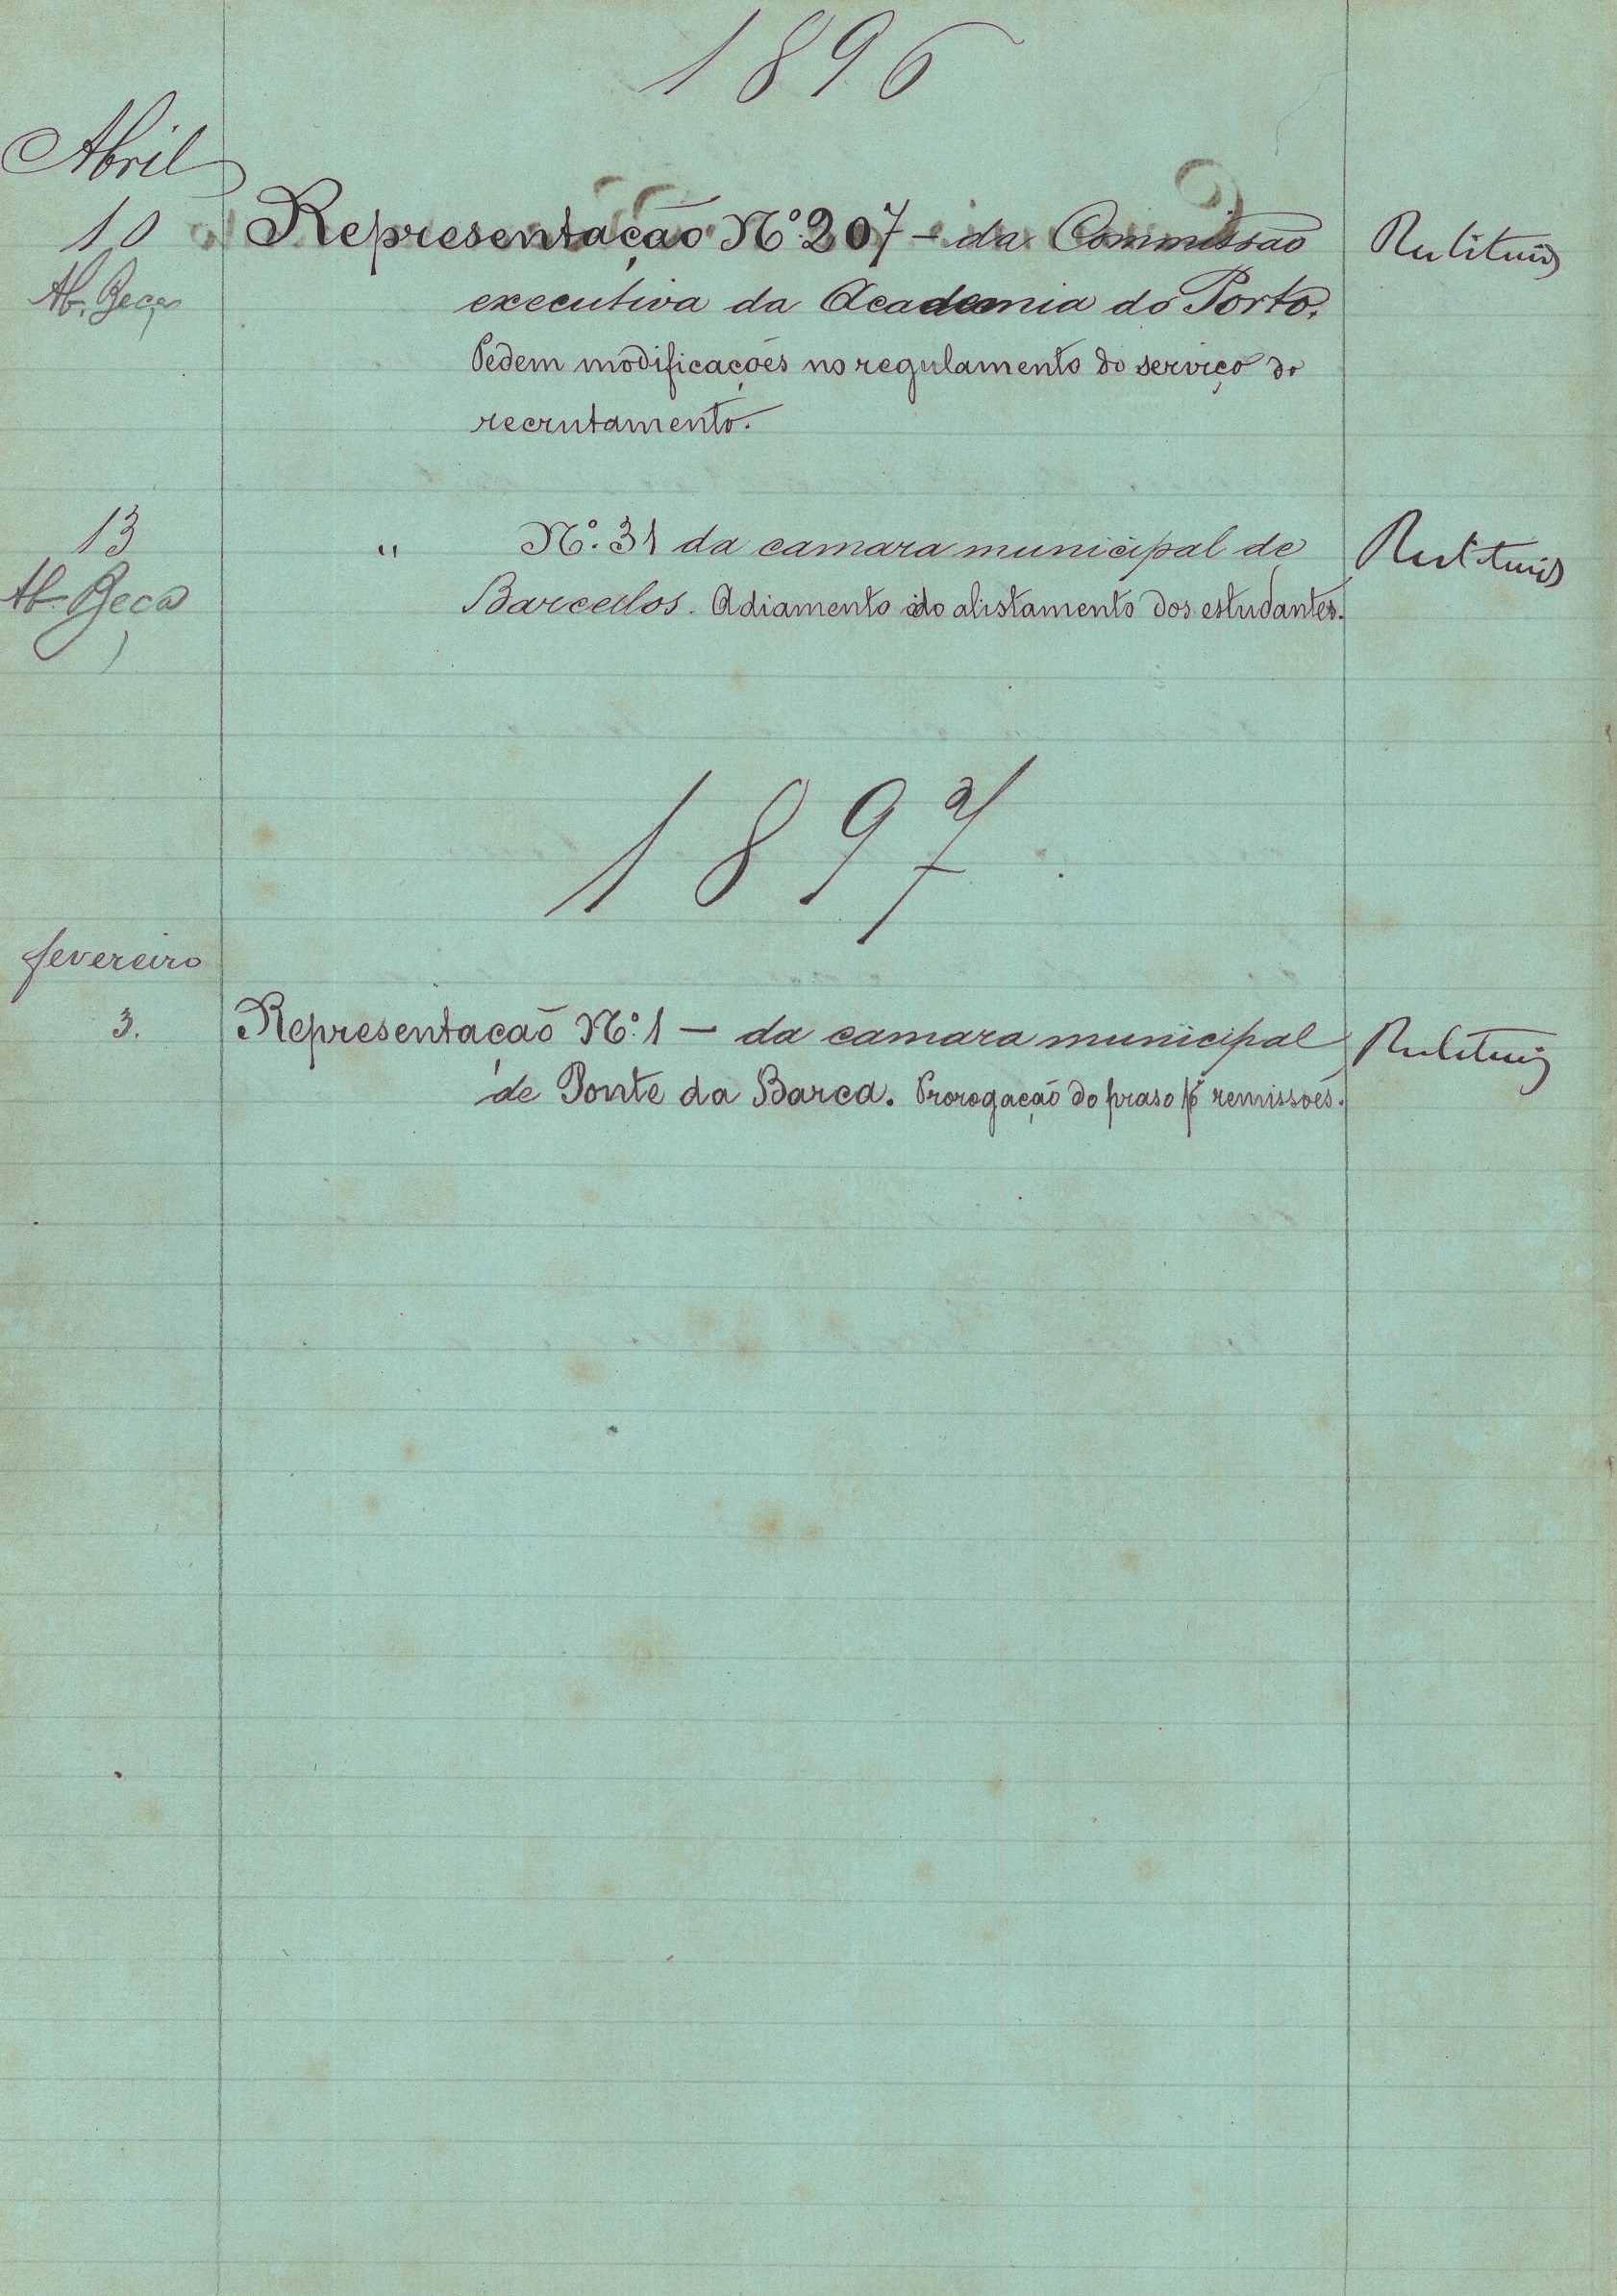 Registo de correspondência de 1896-1897. Cota AHP: Liv. 2507